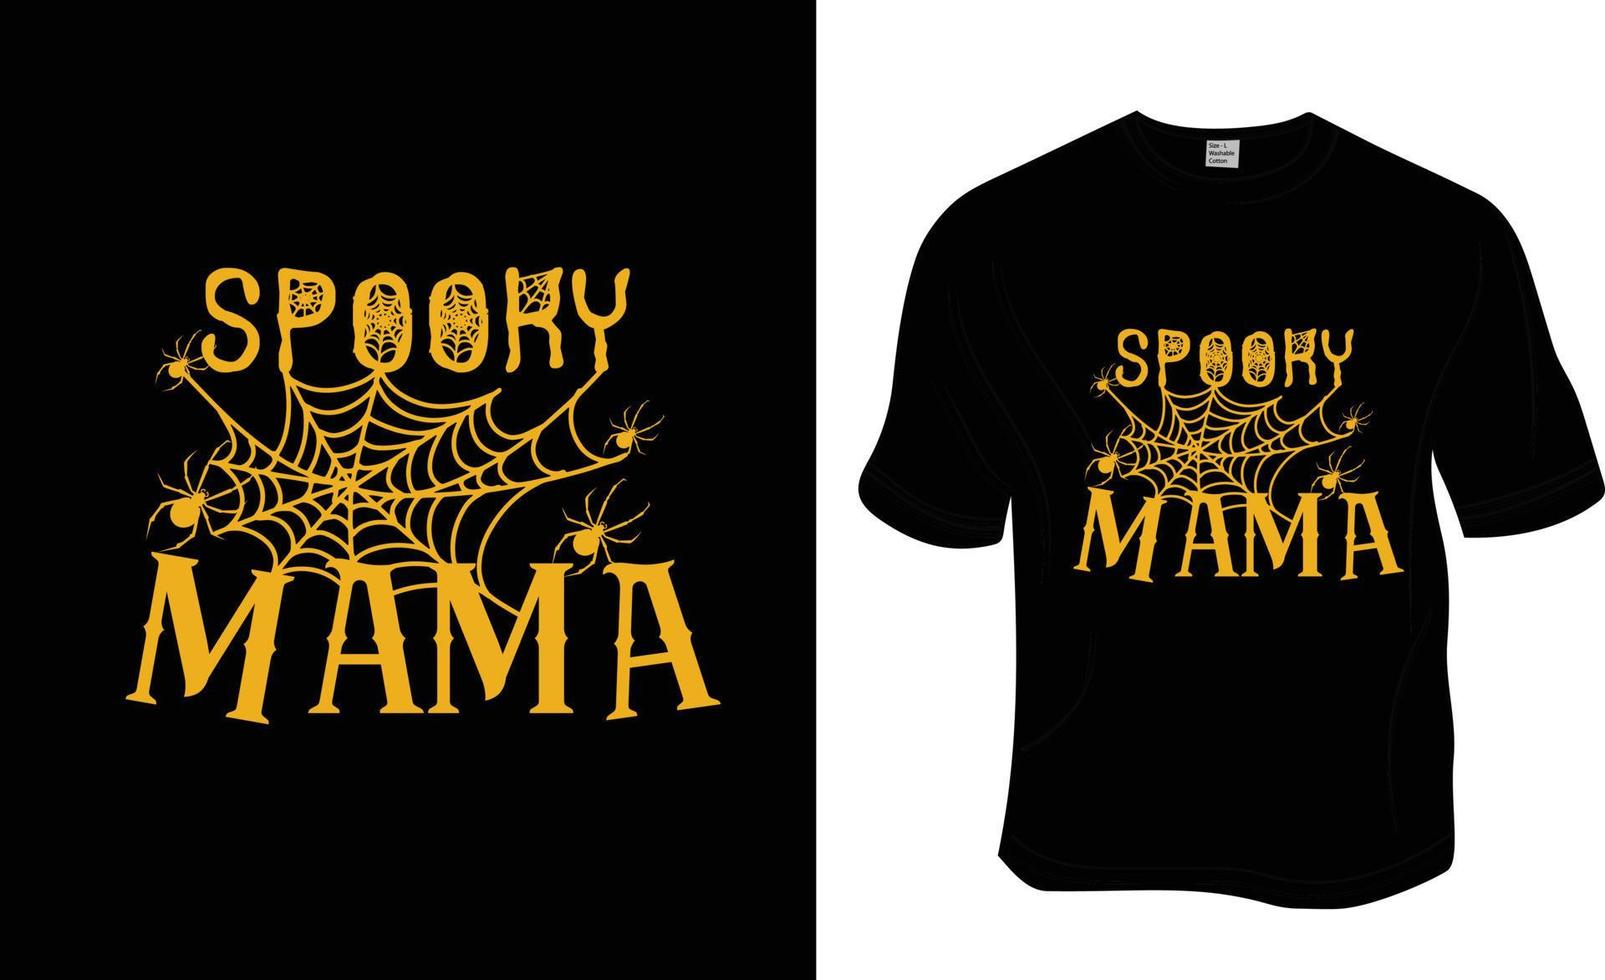 gespenstisches Mama-Halloween-T-Shirt-Design. druckfertig für Bekleidung, Poster und Illustrationen. moderner, einfacher T-Shirt-Vektor mit Schriftzug. vektor